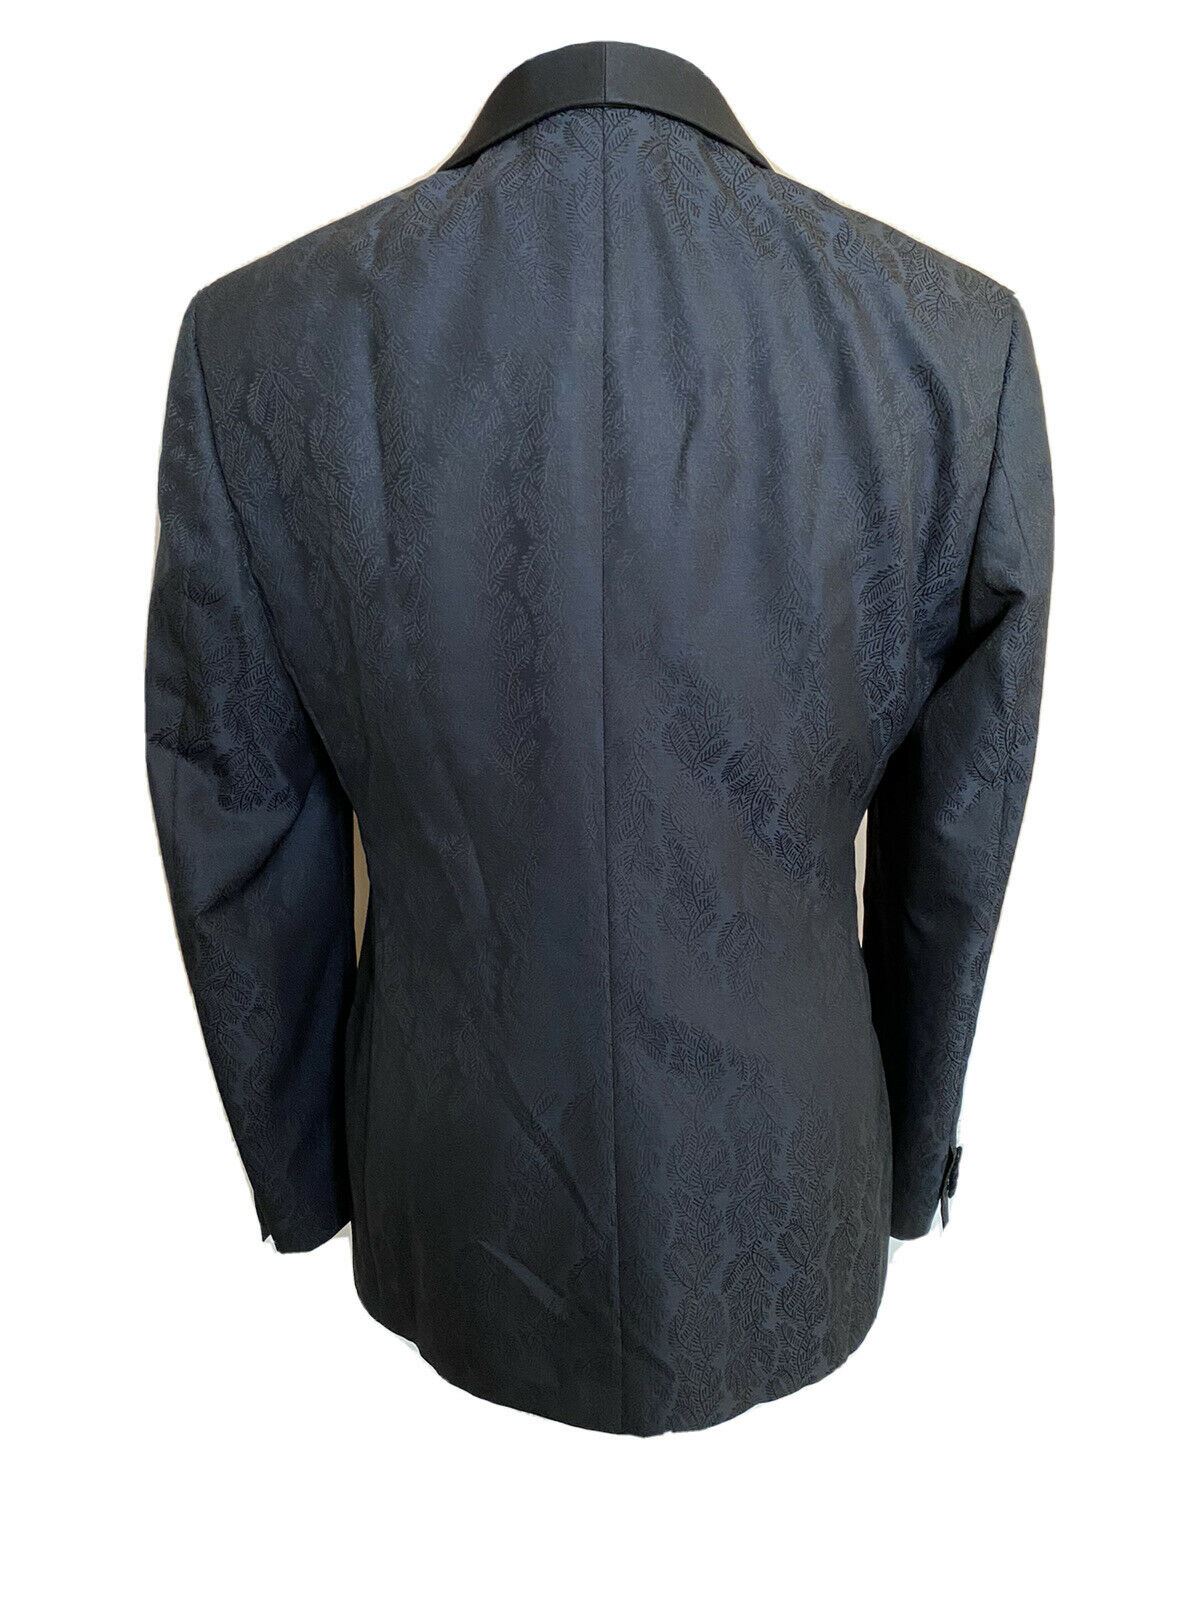 NWT $2895 Giorgio Armani Shawl Collar Blazer Jacket Blue 40R (50R) Italy WSM7H0